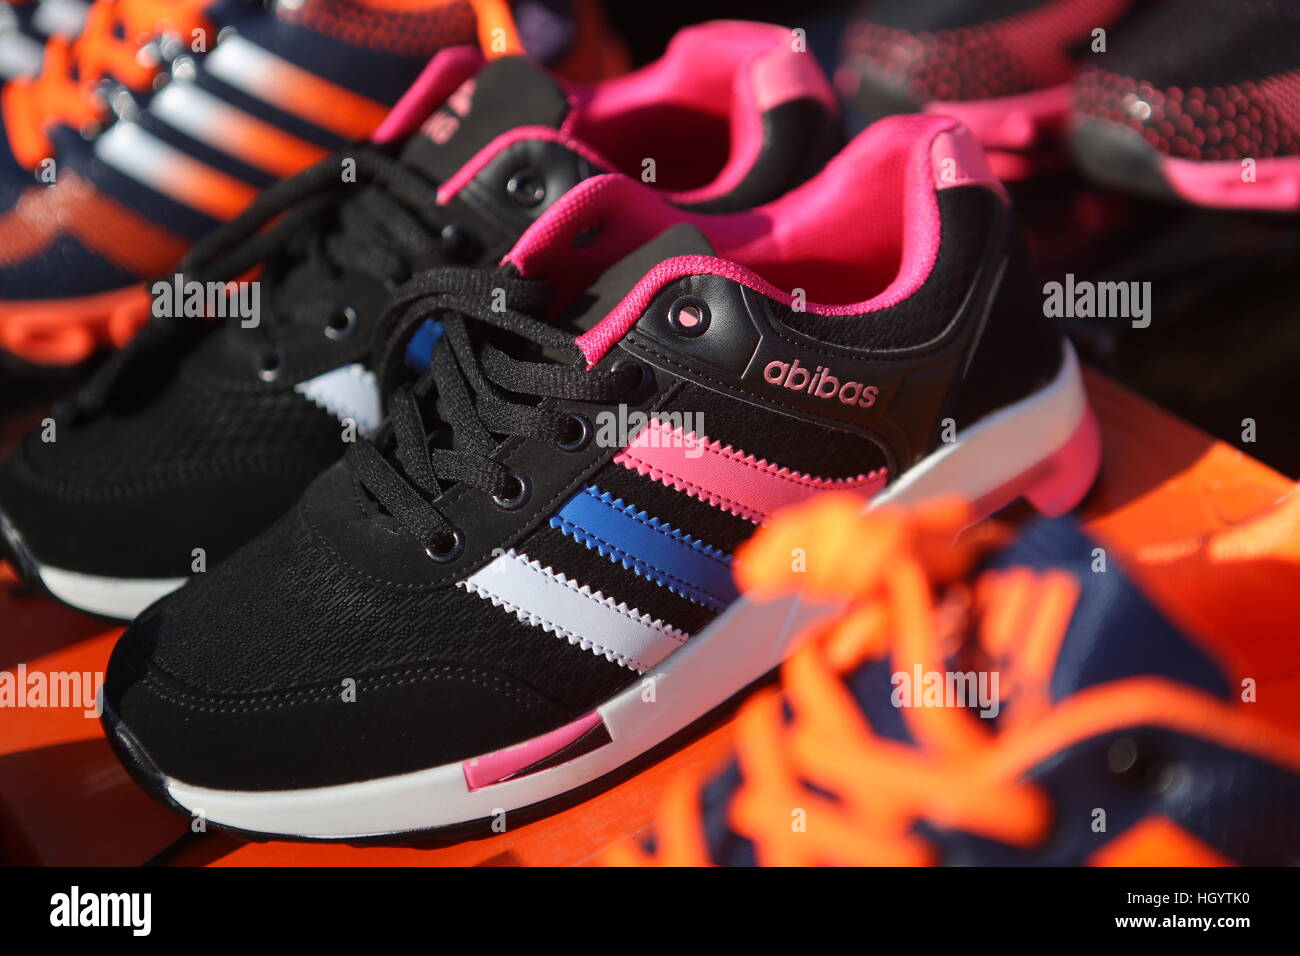 Fake shoes china immagini e fotografie stock ad alta risoluzione - Alamy